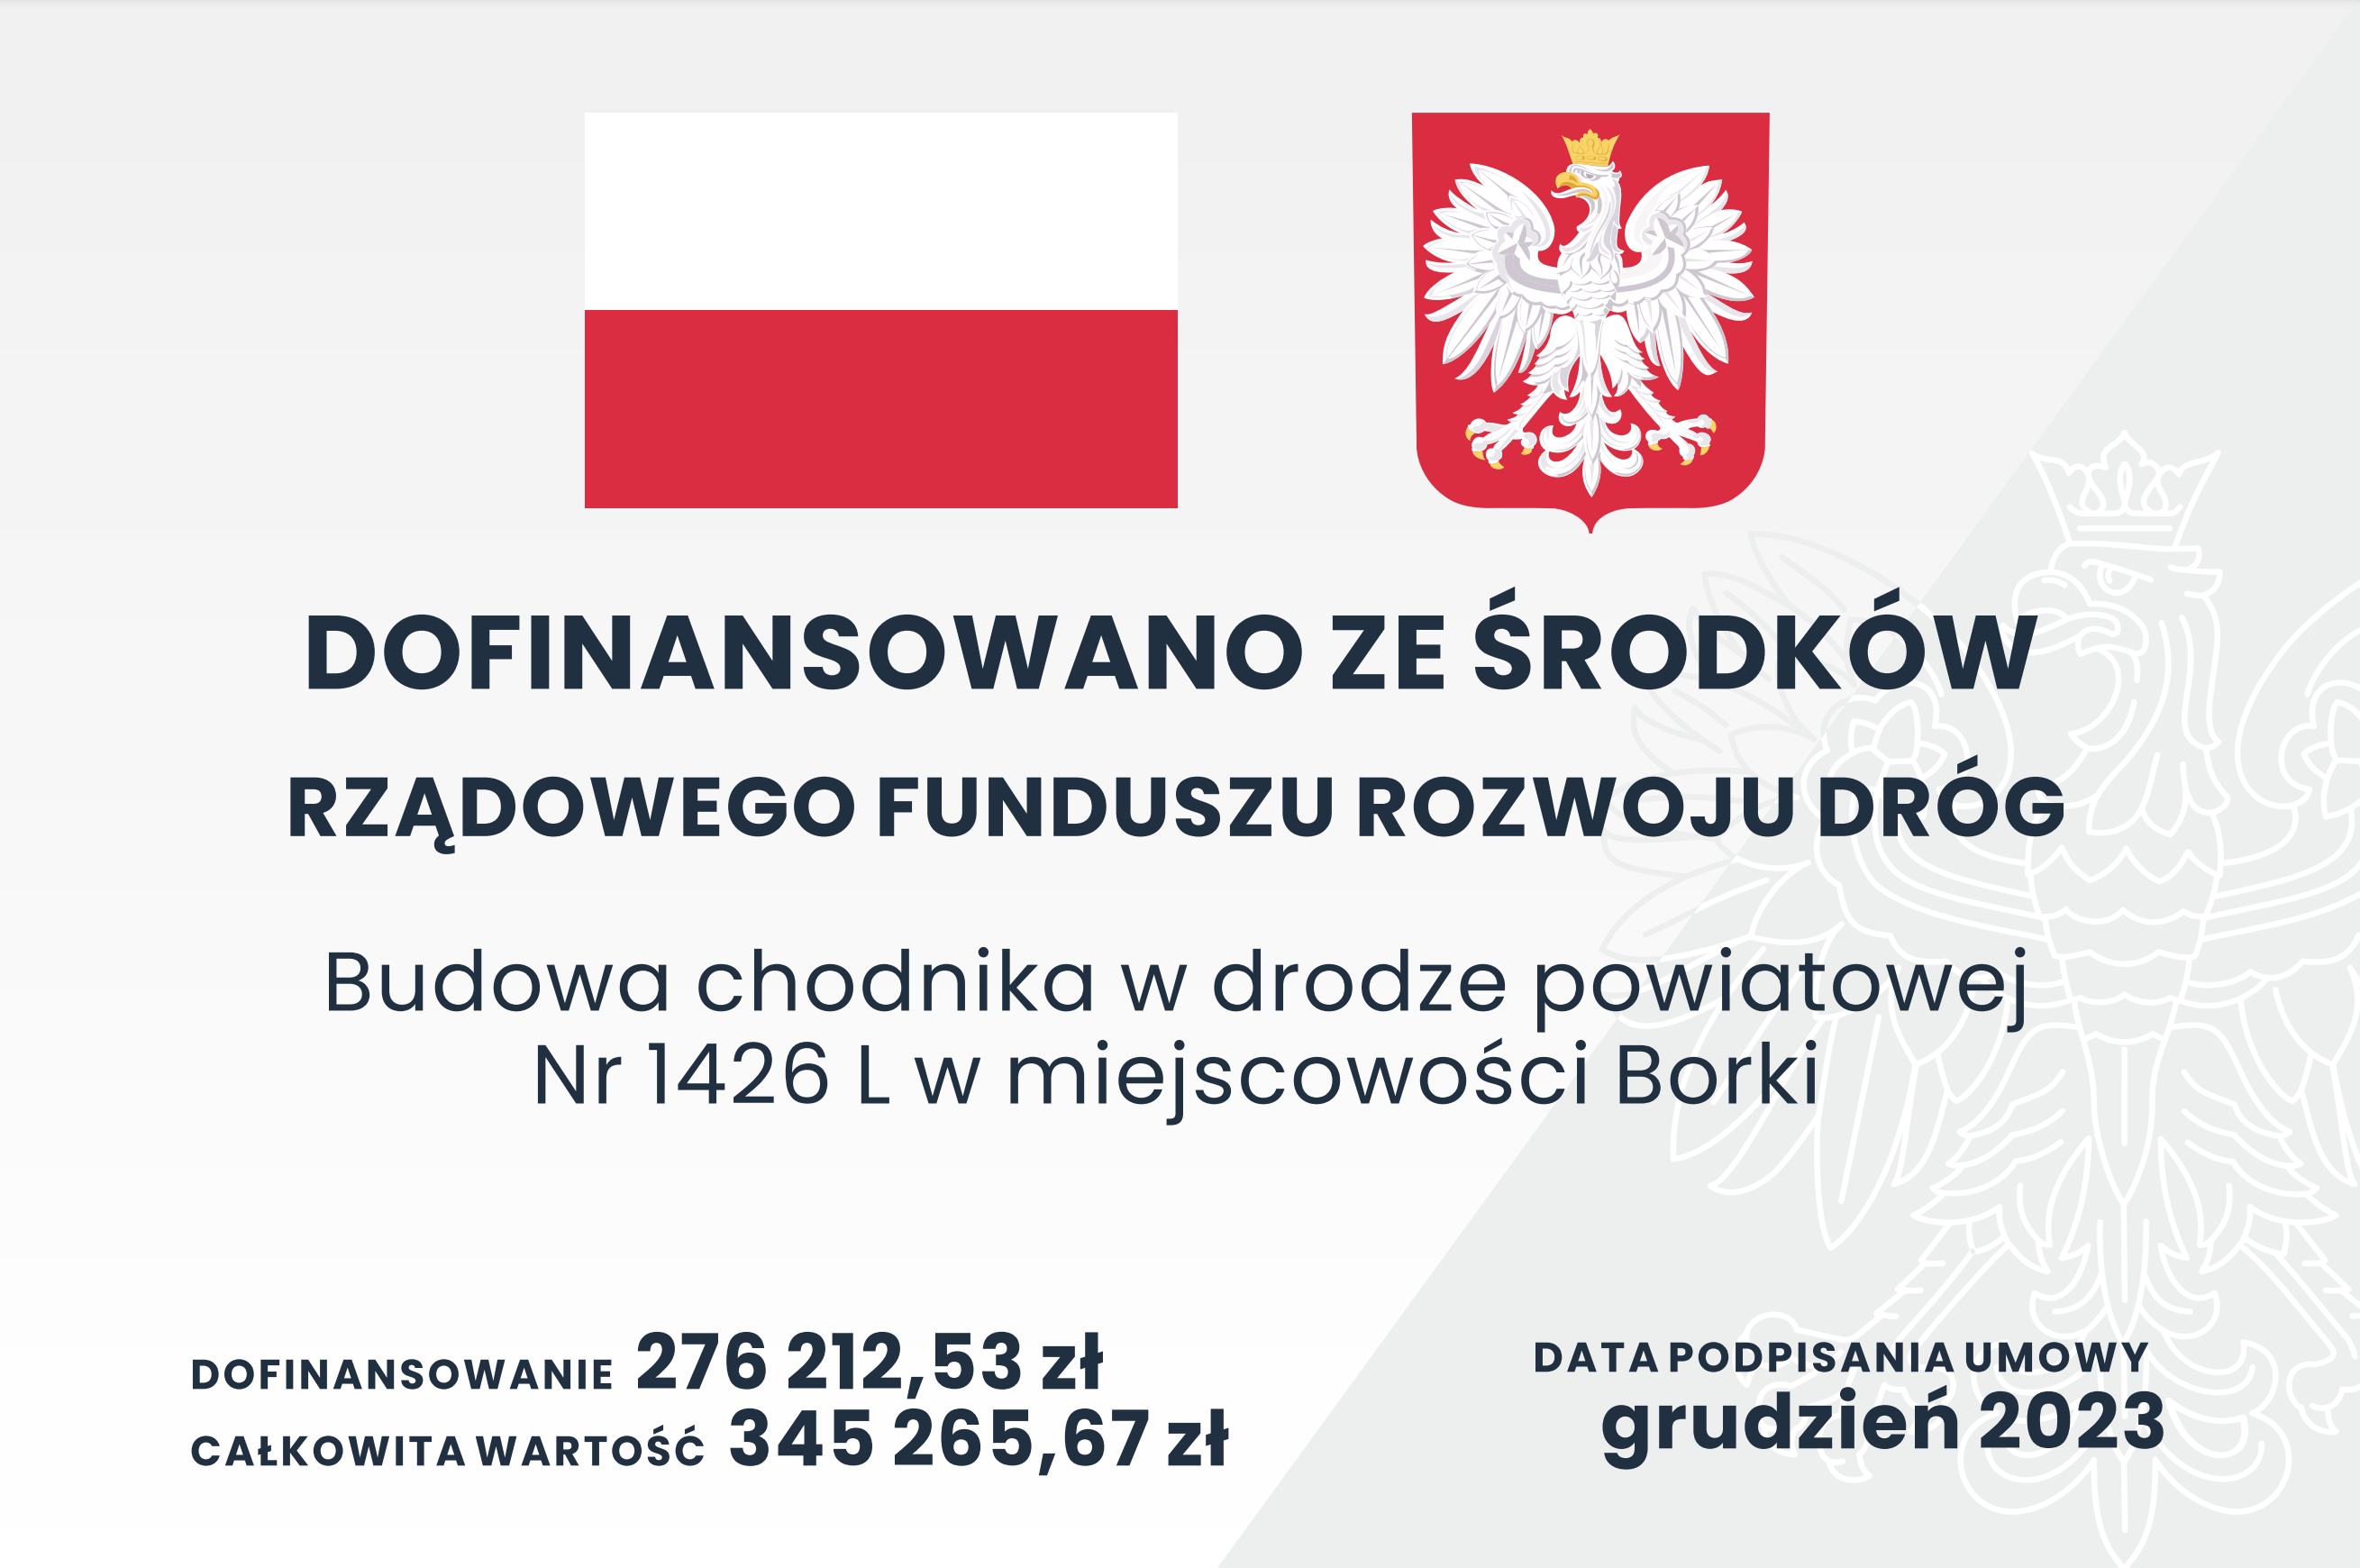 Zdjęcie przedstawia grafikę informacyjną z polskimi symbolami narodowymi, ogłaszającą dofinansowanie budowy chodnika z rządowego funduszu rozwoju dróg w miejscowości Borki.